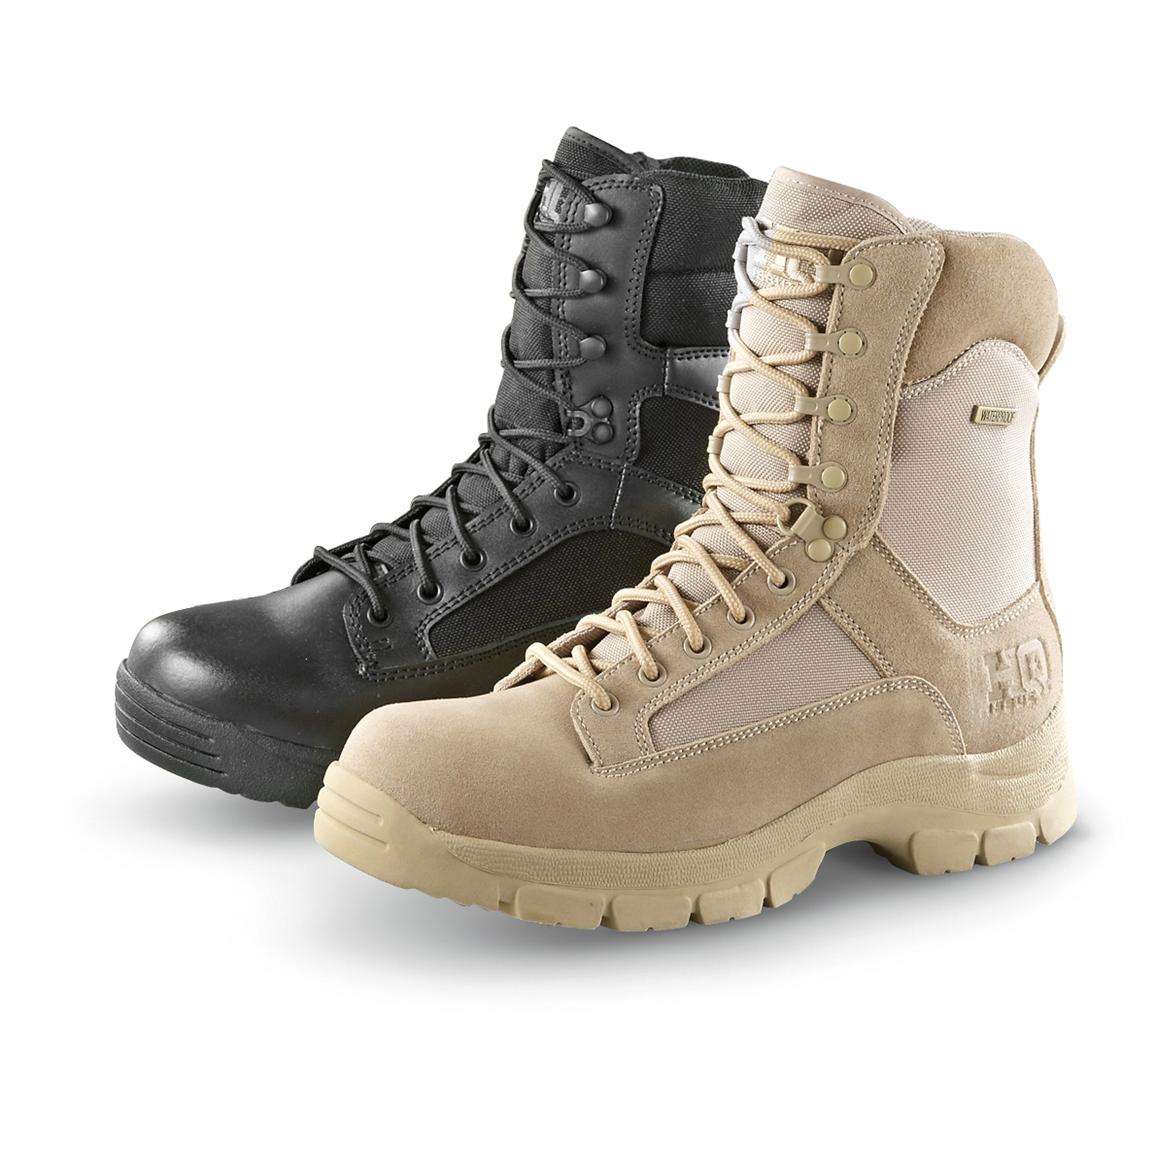 HQ ISSUE Men's Waterproof Combat Boots, Side Zip, Desert Tan - 292022 ...